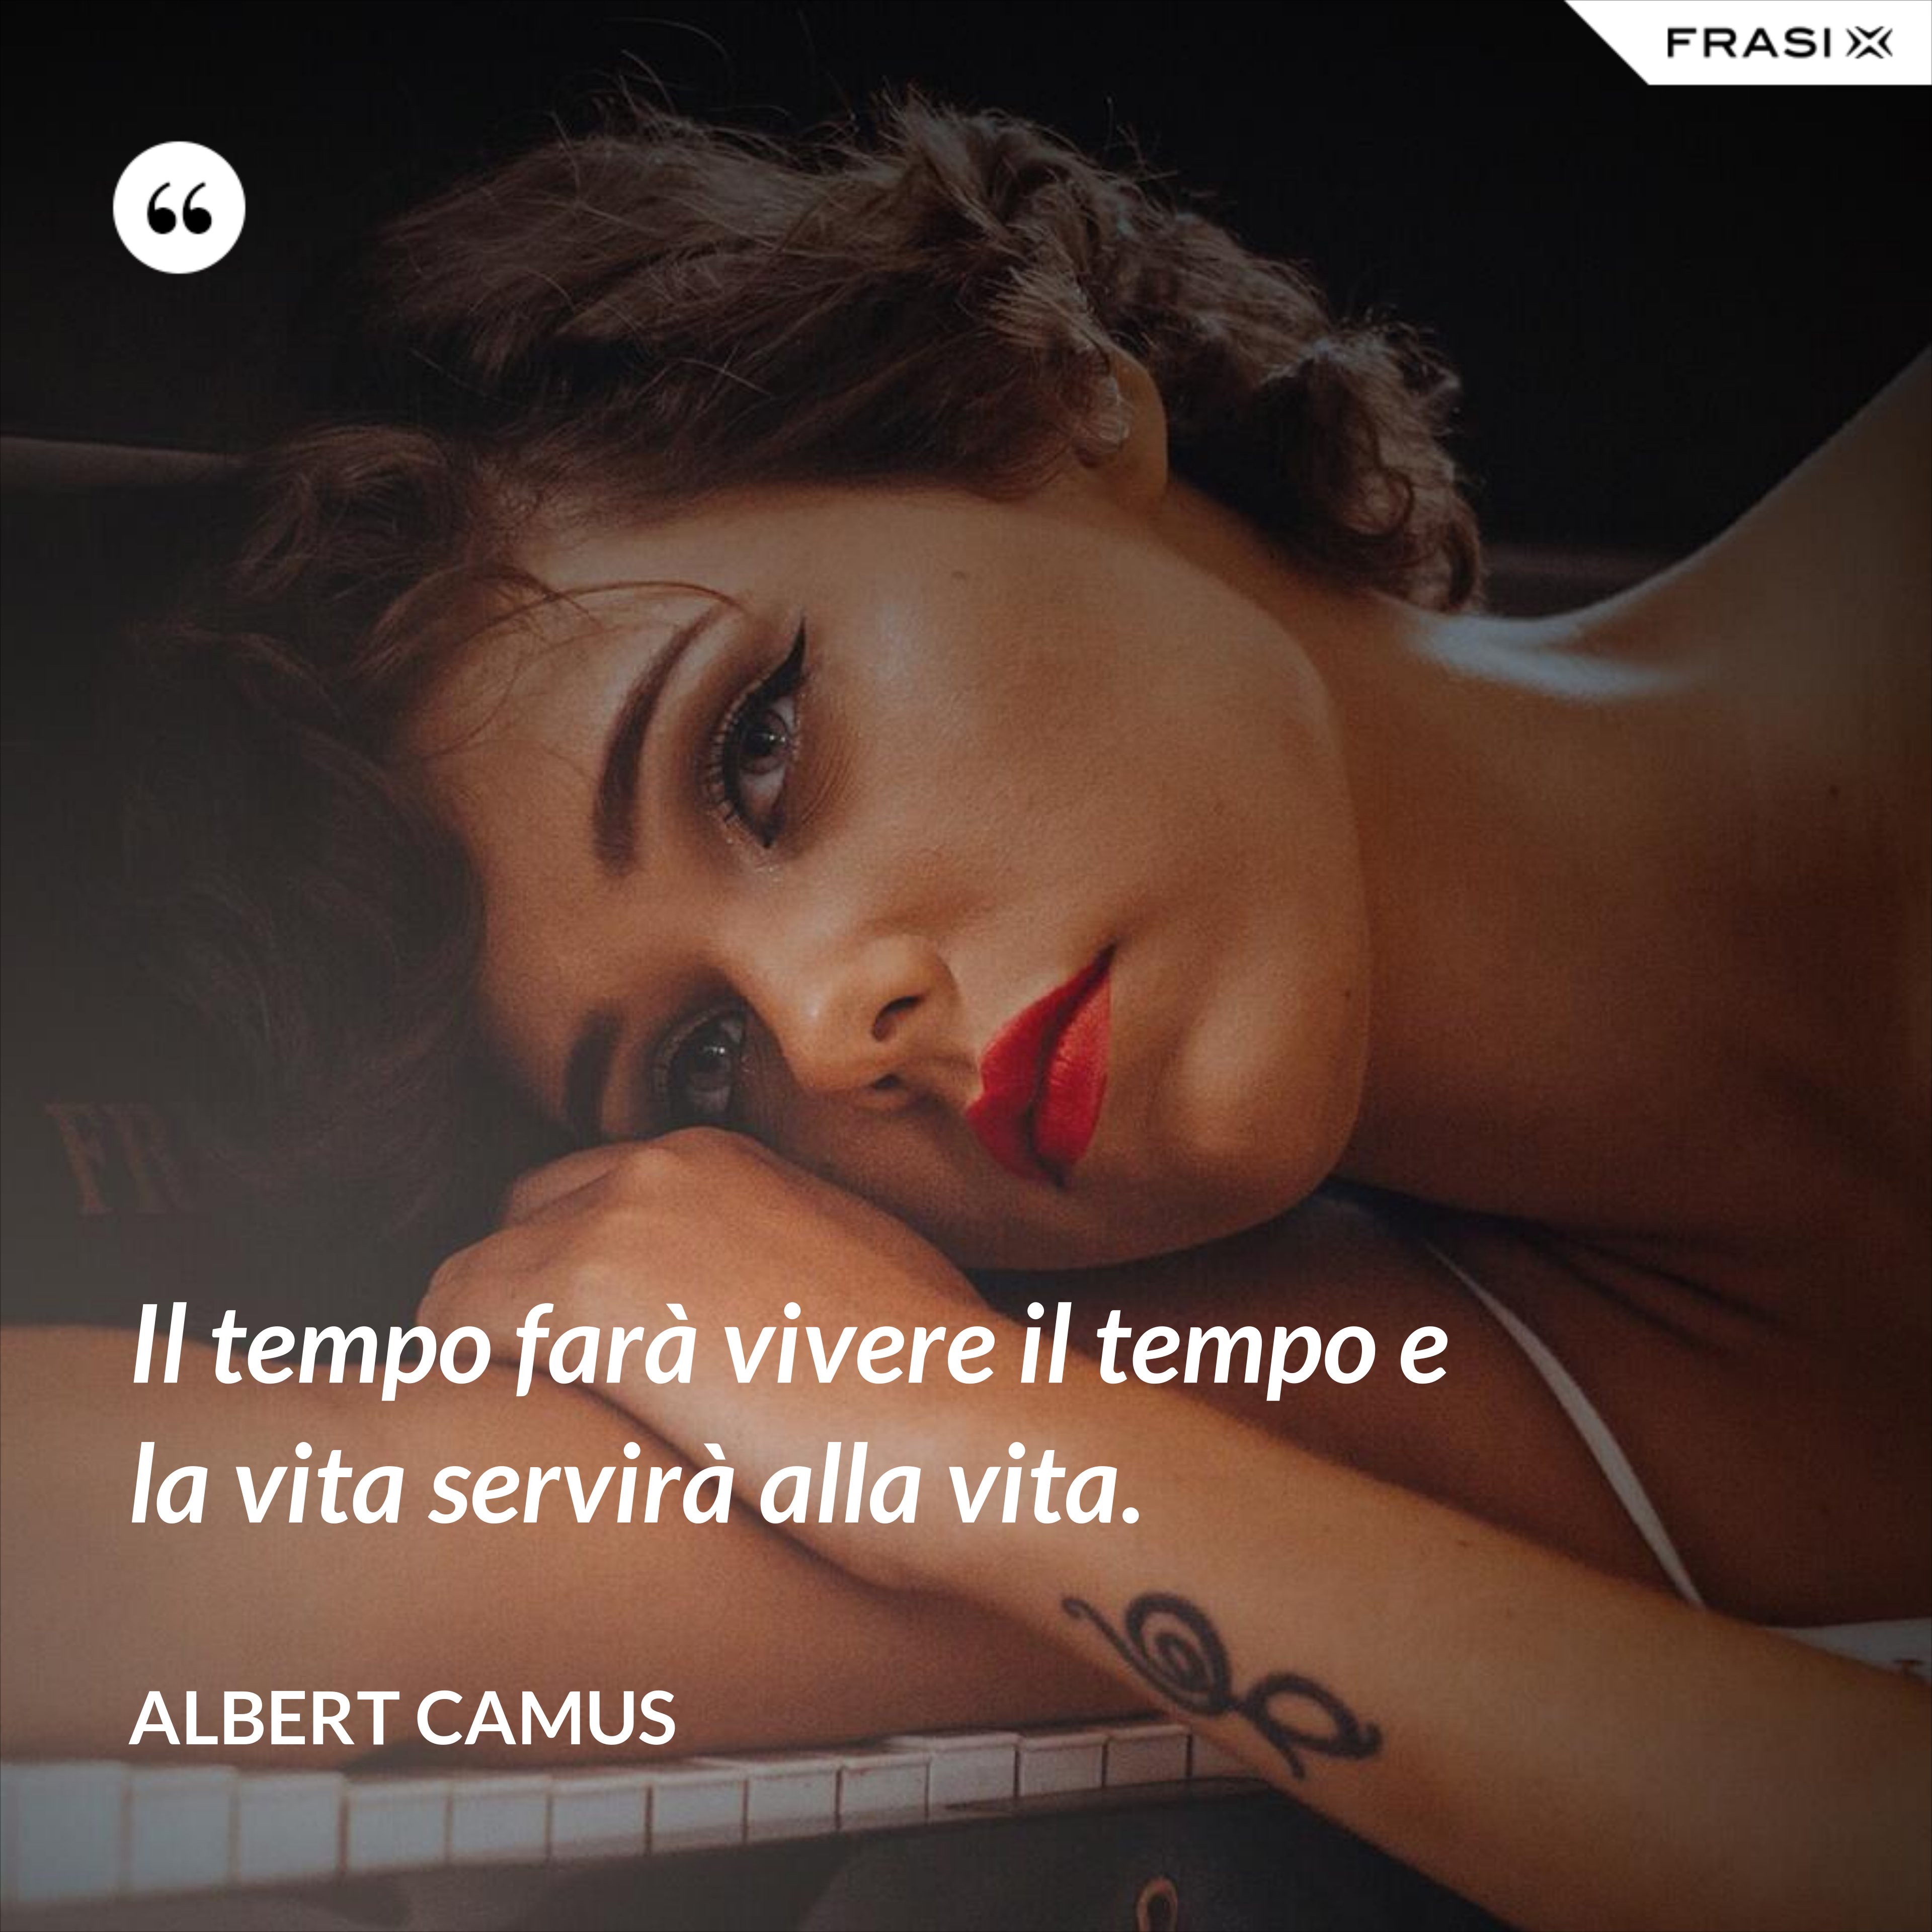 Il tempo farà vivere il tempo e la vita servirà alla vita. - Albert Camus